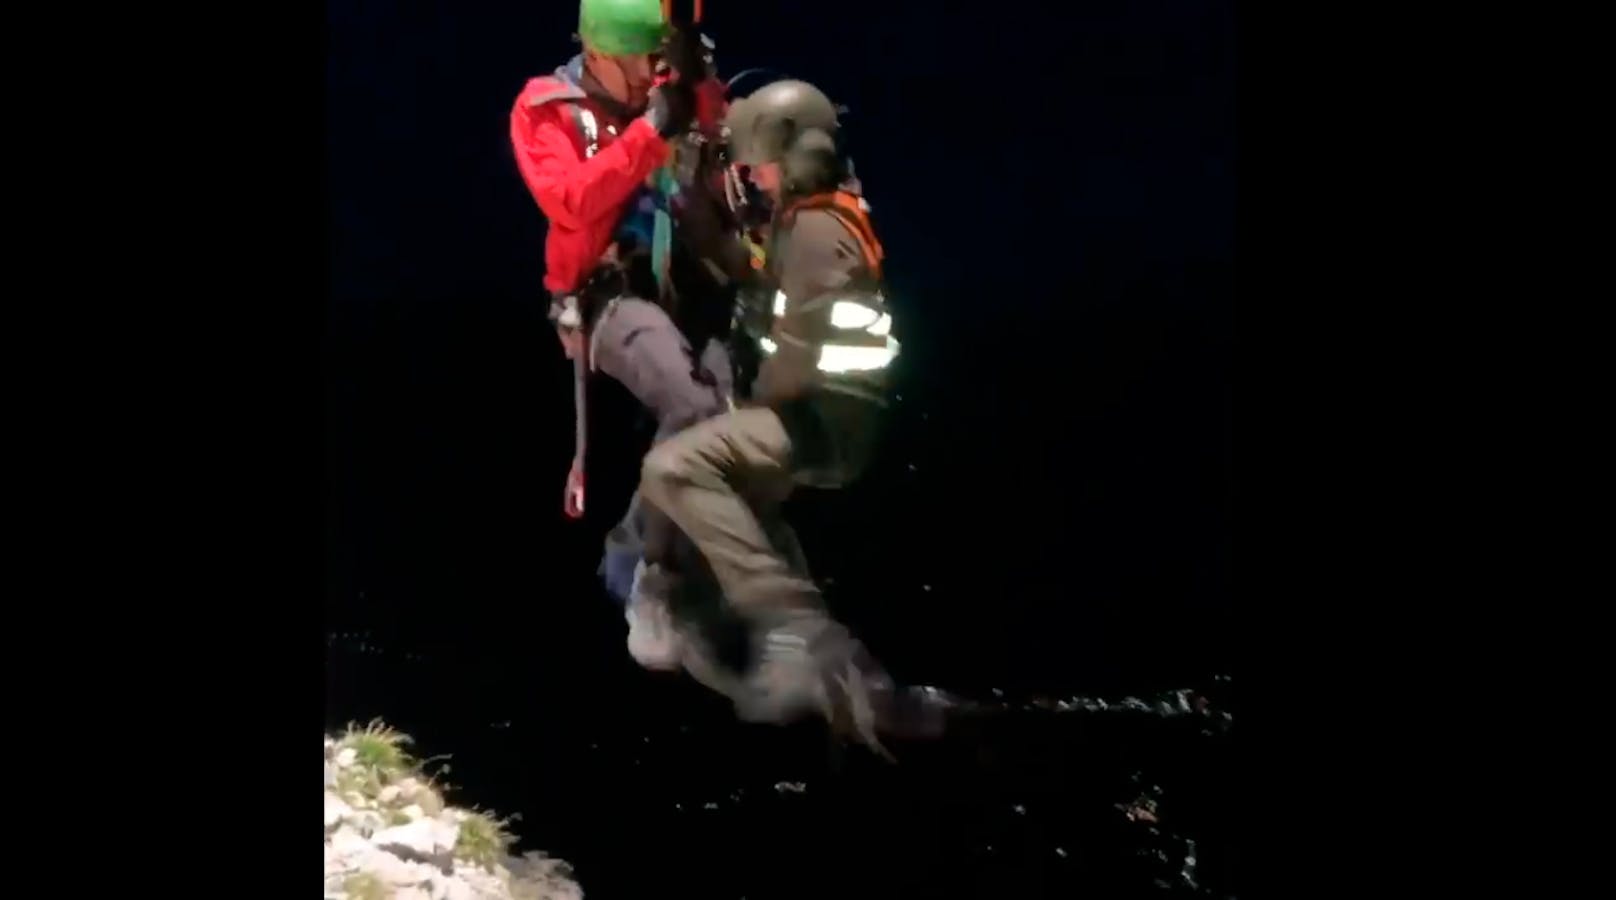 Rettung eines verunglückten Alpinisten im Dachstein-Massiv mit Unterstützung des Bundesheers (25. August 2020)